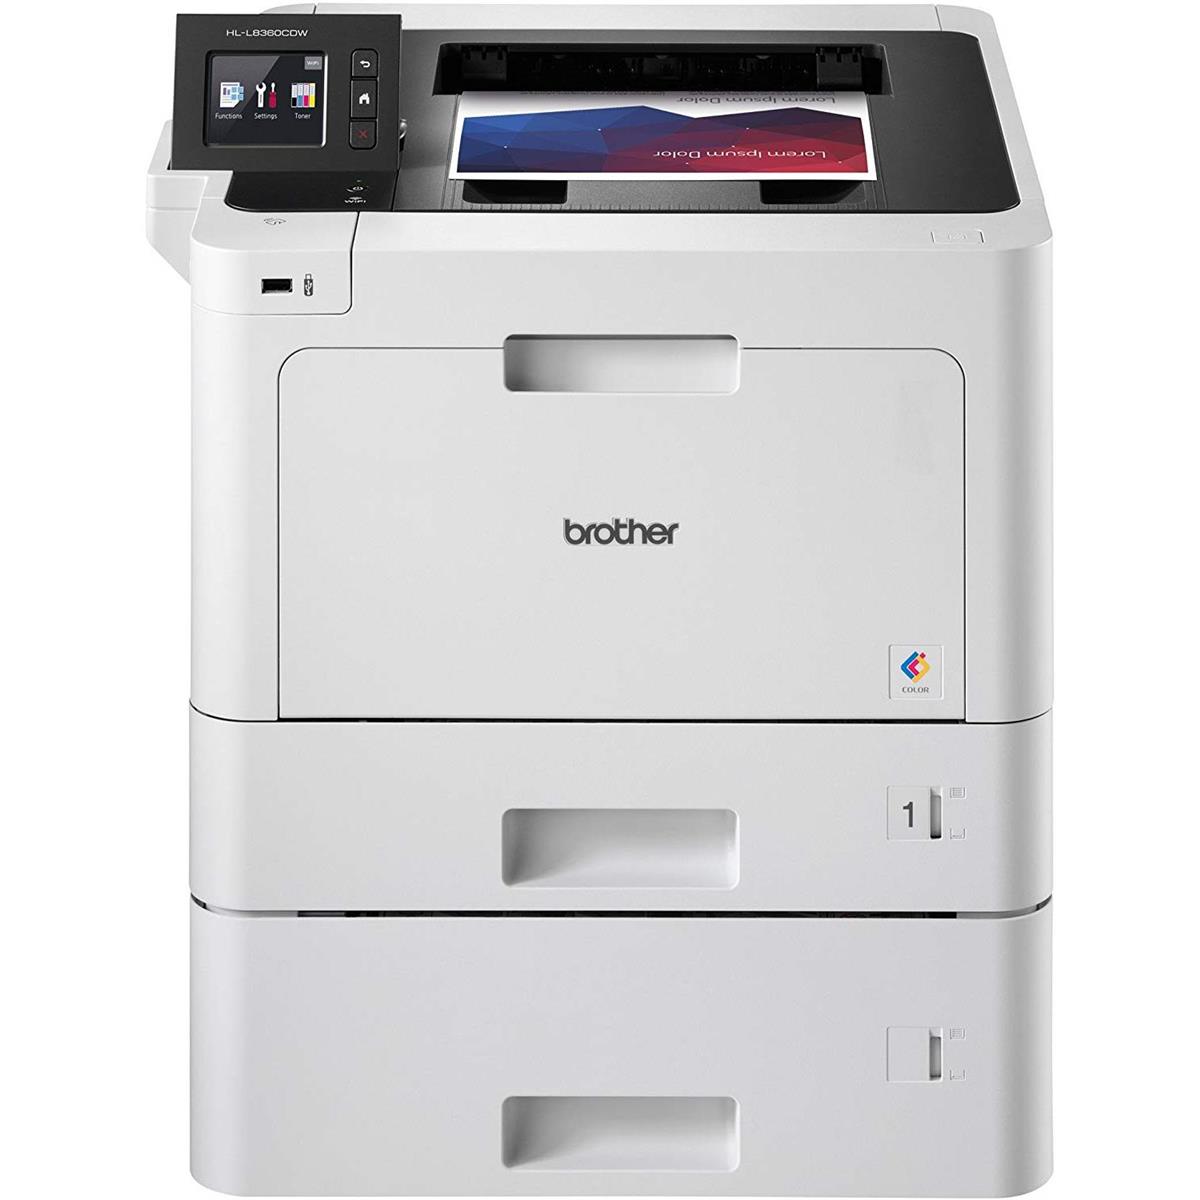 

Brother HL-L8360CDWT Color Laser Printer